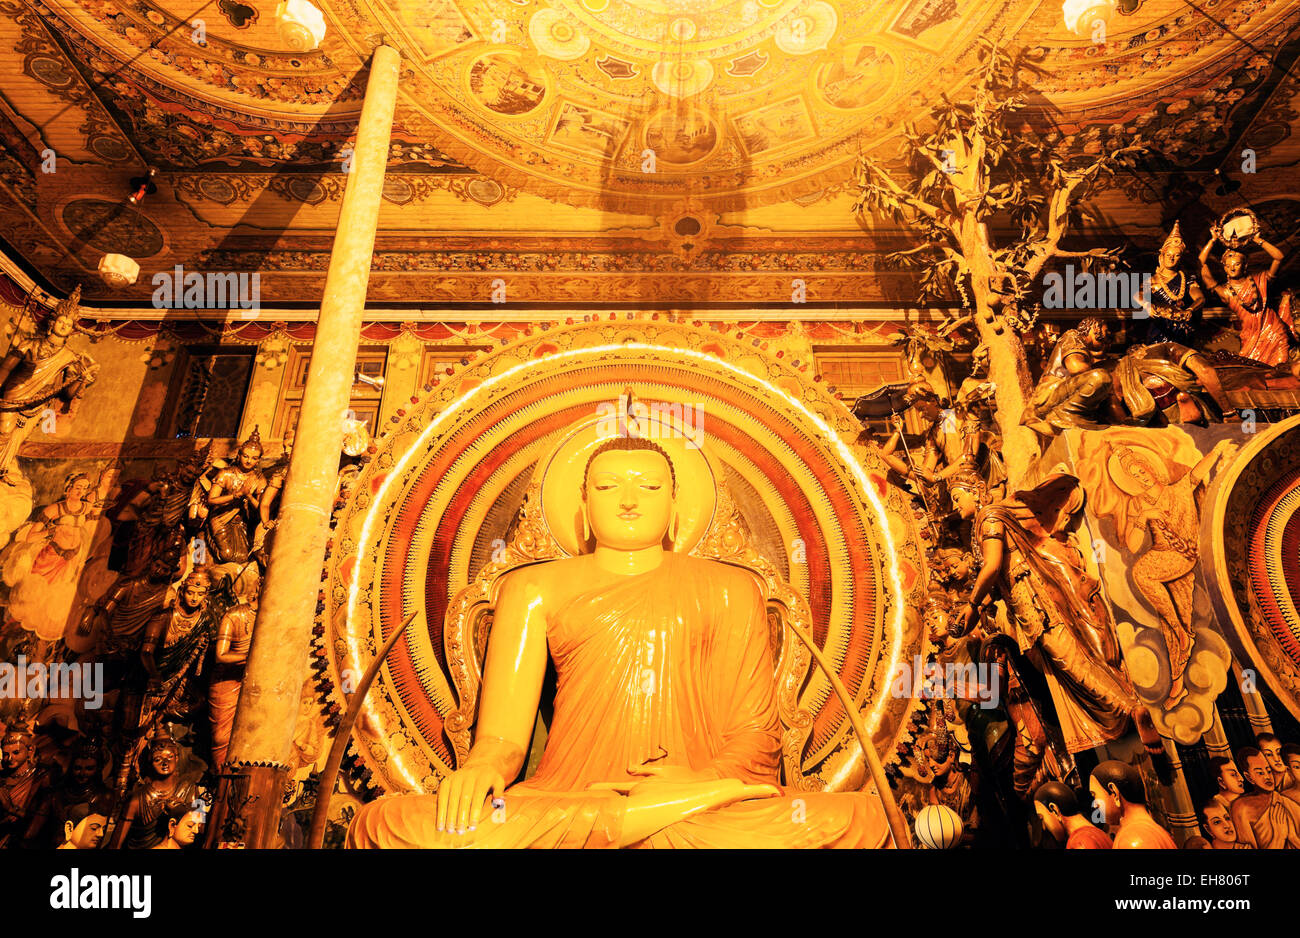 Budda statue in Gangaramaya Temple - Colombo, Sri Lanka Stock Photo